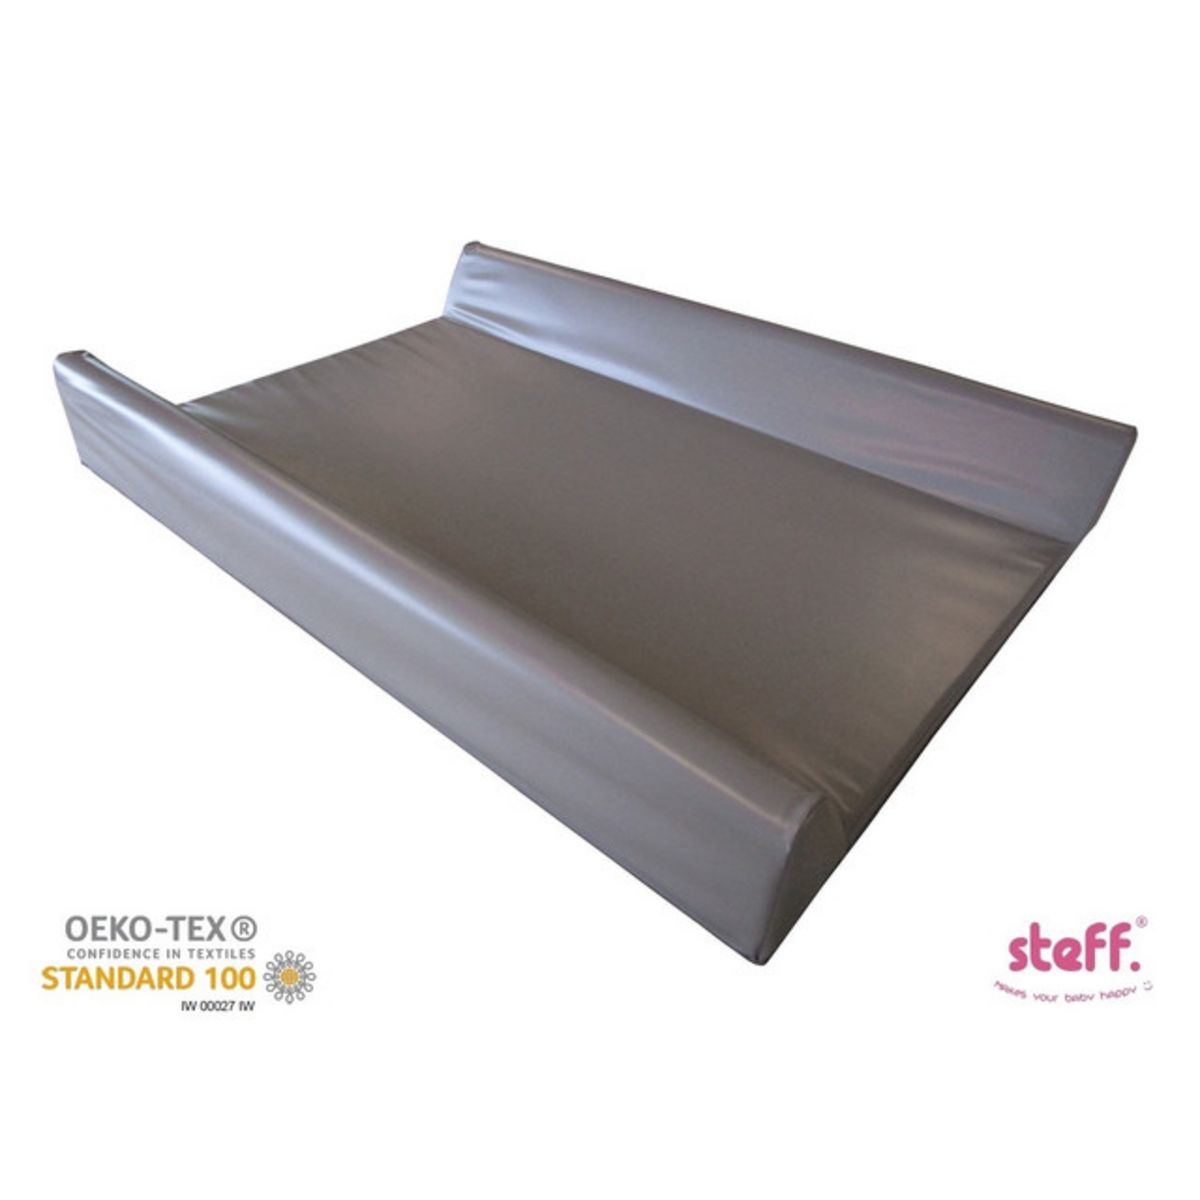  Steff - Matelas à langer avec rebords - 70x50 cm - Taupe - Label de qualité OEKO-TEX standard 100